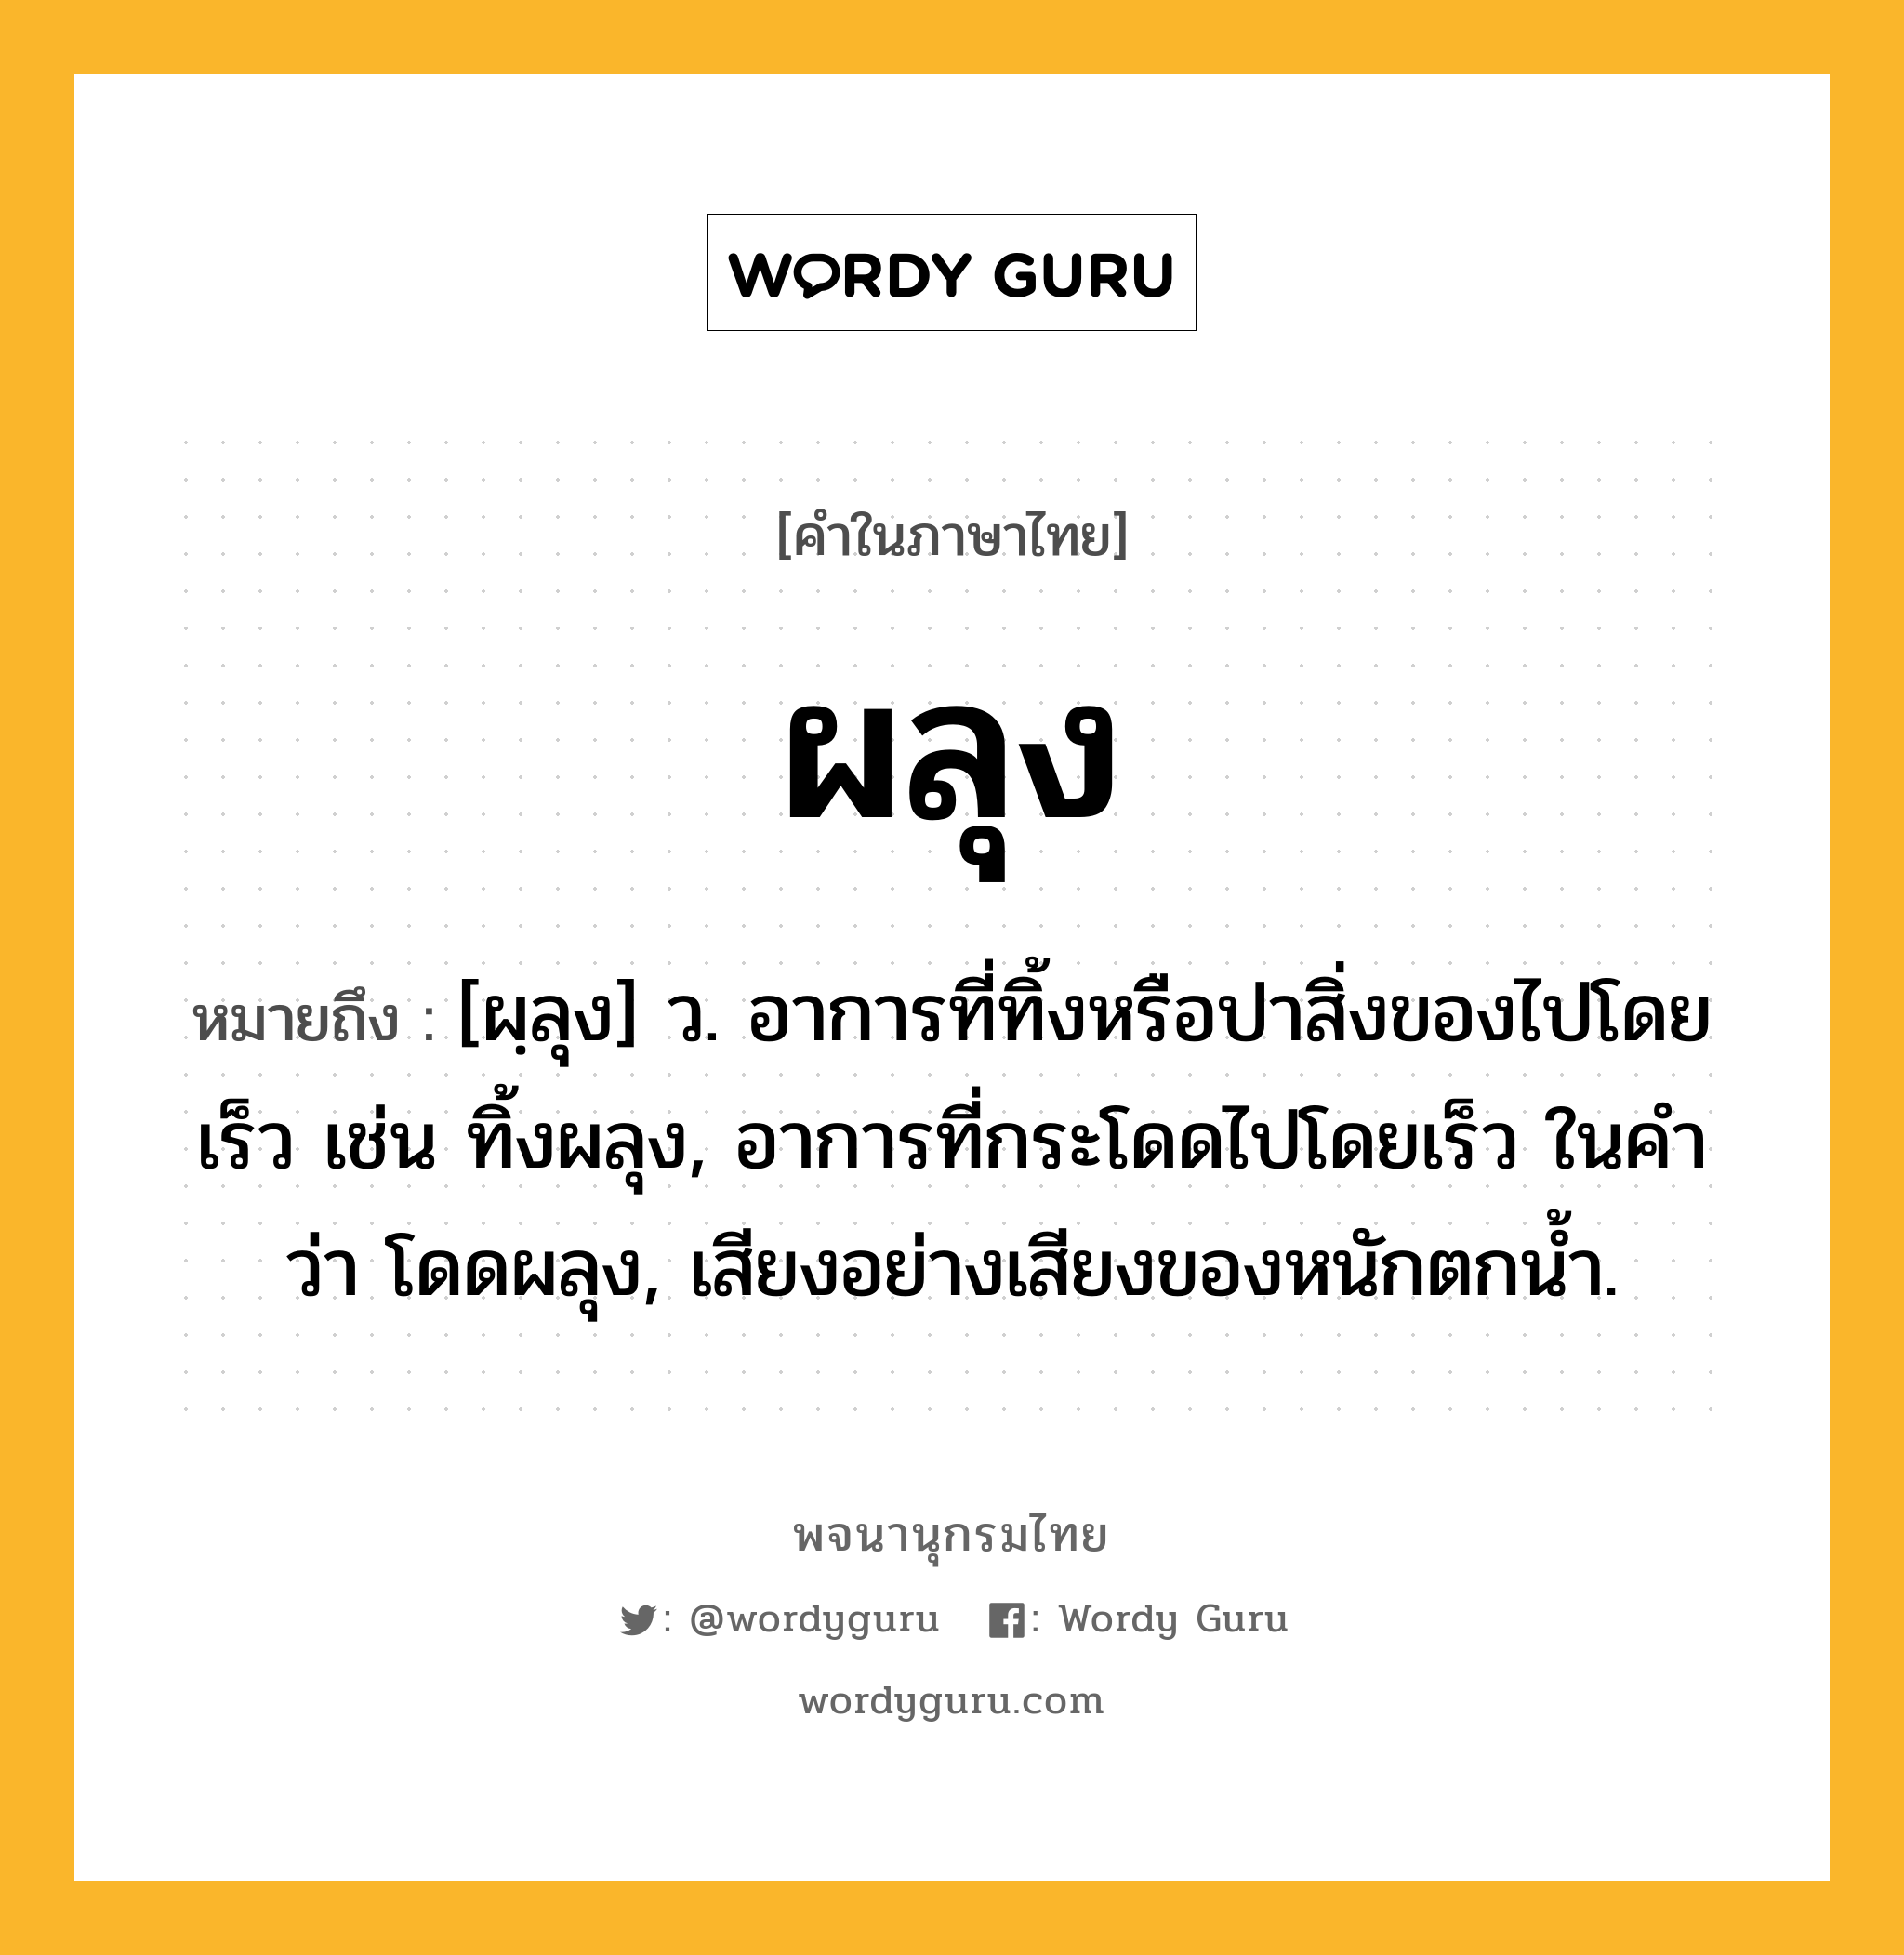 ผลุง หมายถึงอะไร?, คำในภาษาไทย ผลุง หมายถึง [ผฺลุง] ว. อาการที่ทิ้งหรือปาสิ่งของไปโดยเร็ว เช่น ทิ้งผลุง, อาการที่กระโดดไปโดยเร็ว ในคำว่า โดดผลุง, เสียงอย่างเสียงของหนักตกนํ้า.